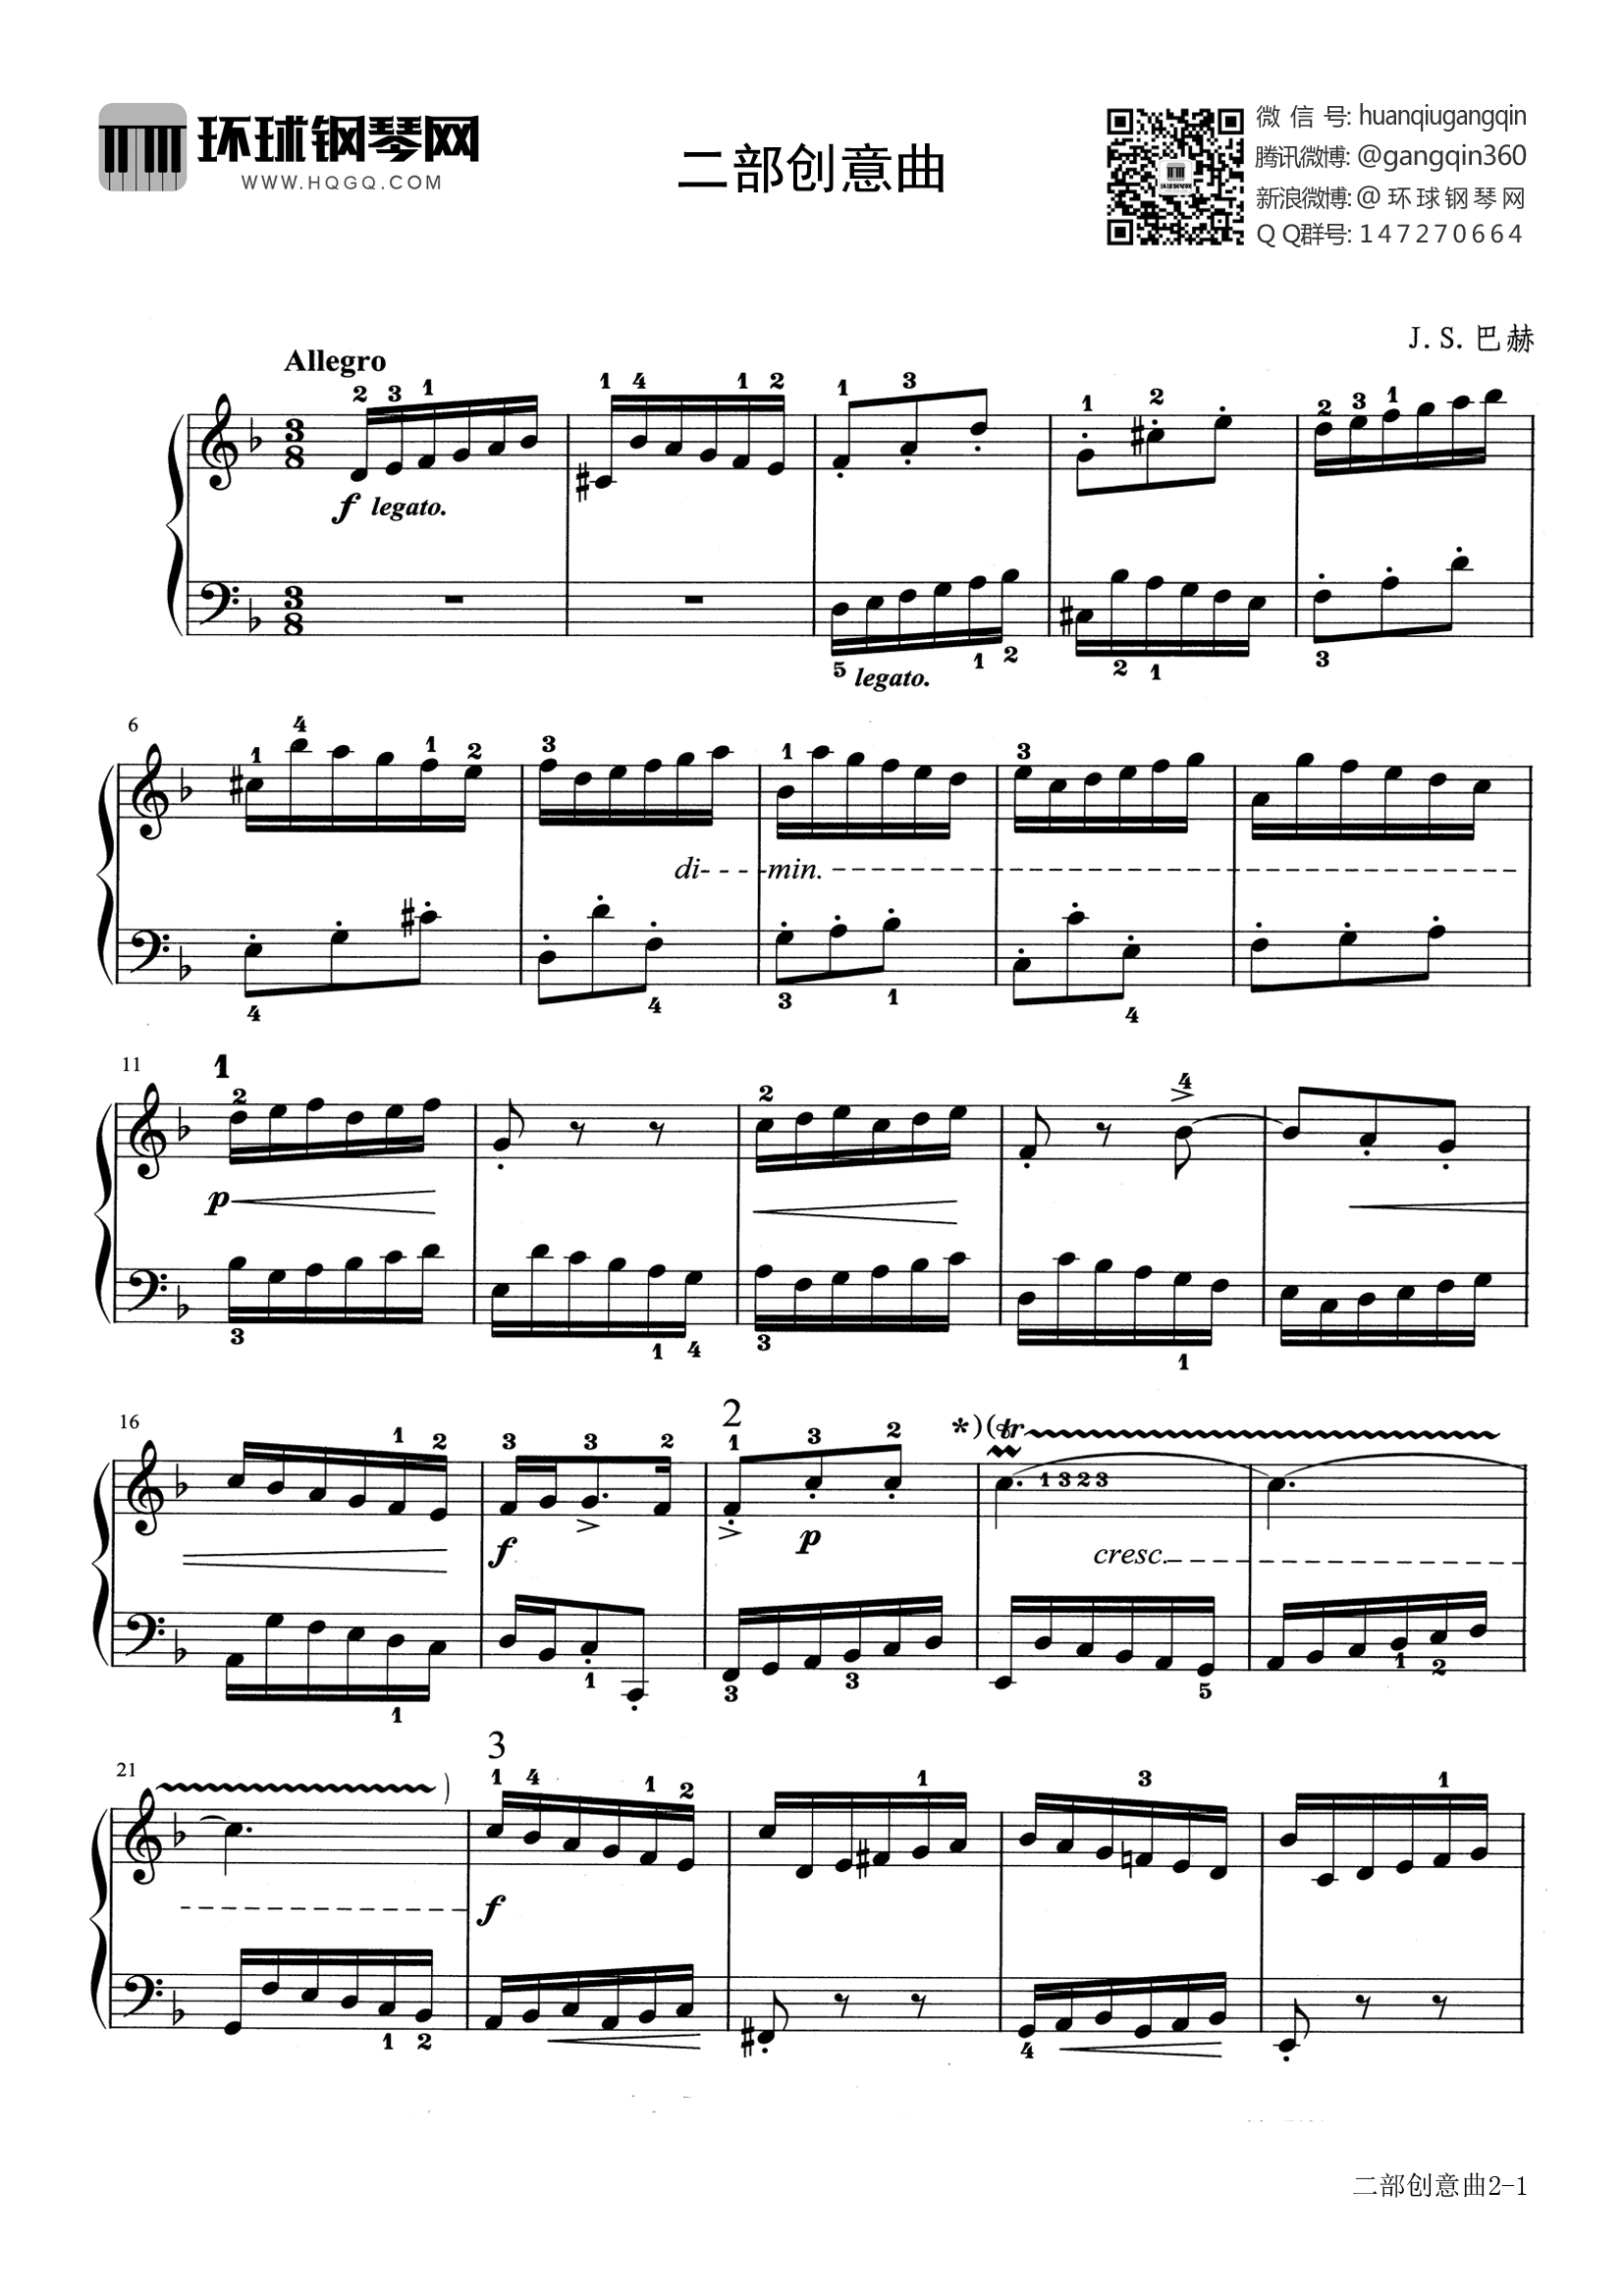 巴赫二部创意曲8谱子图片